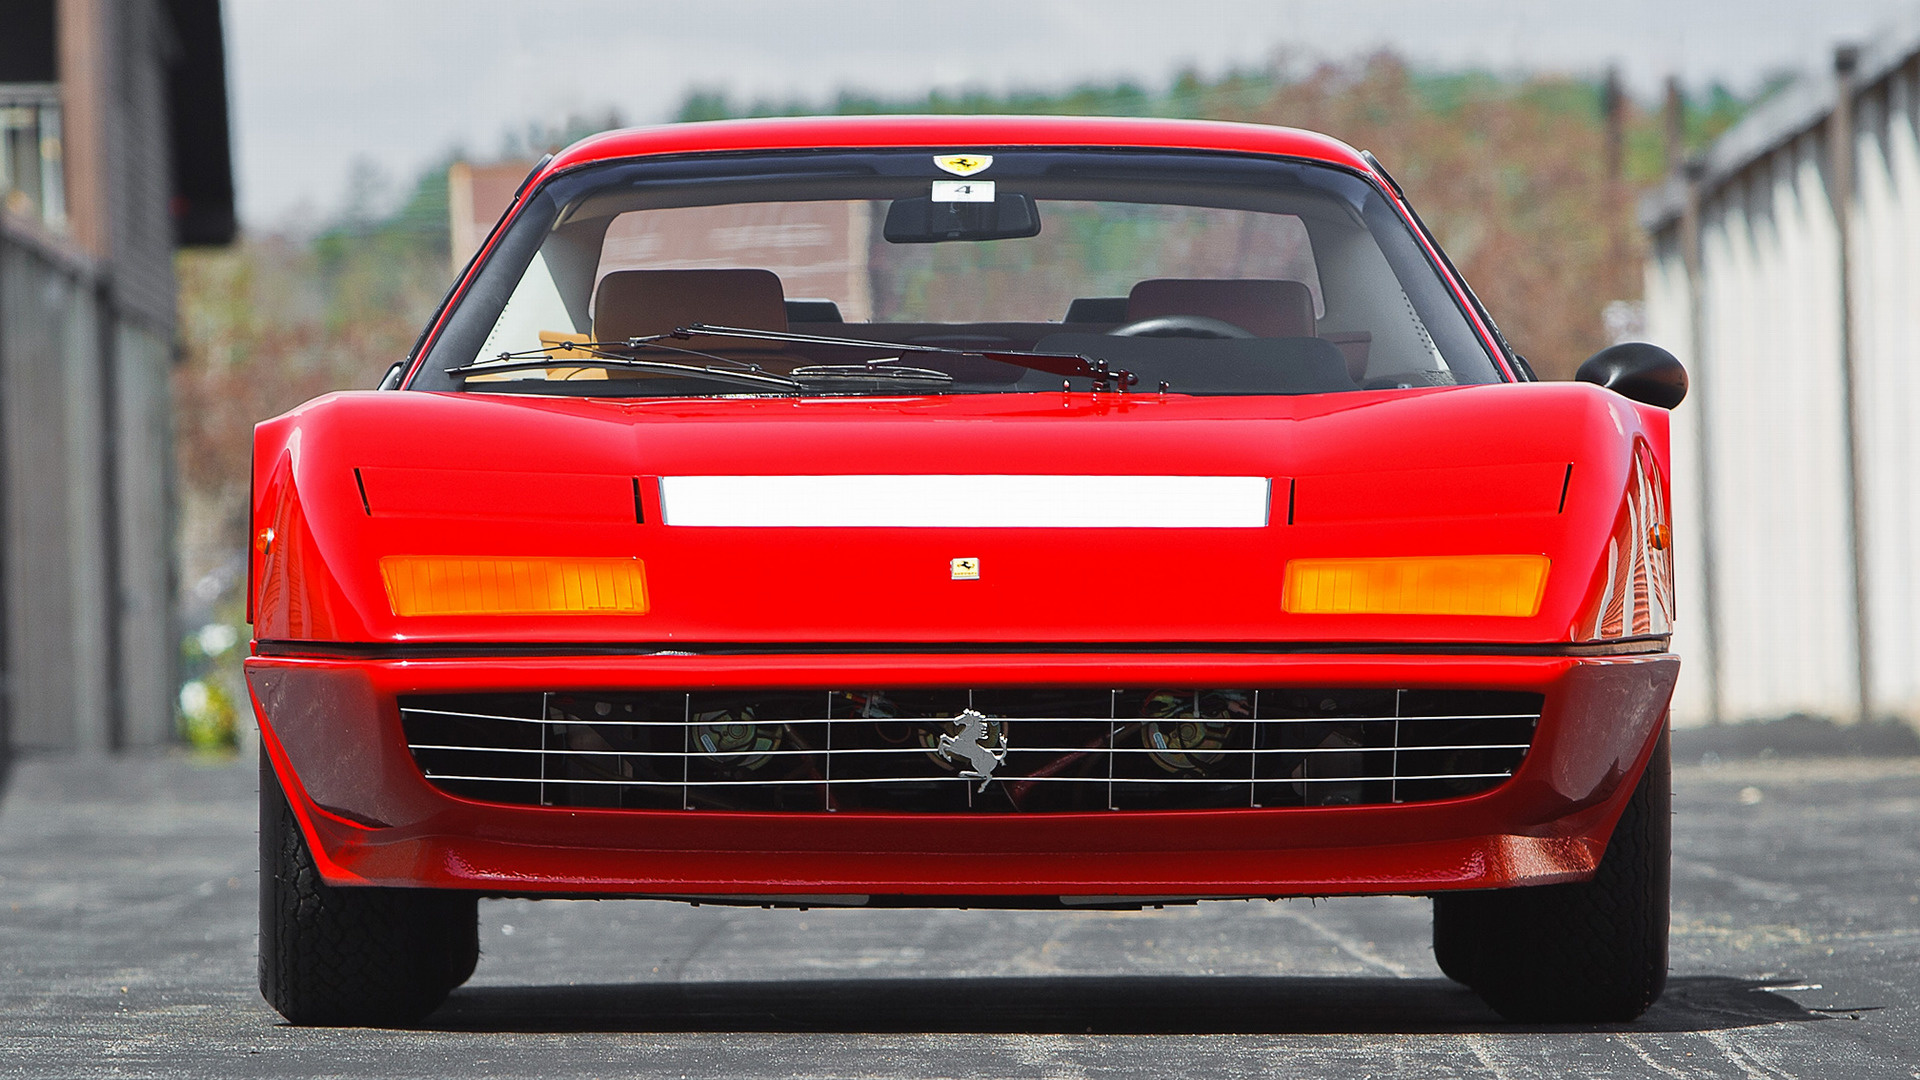 1976 Ferrari 512 BB HD Wallpaper | Background Image | 1920x1080 | ID